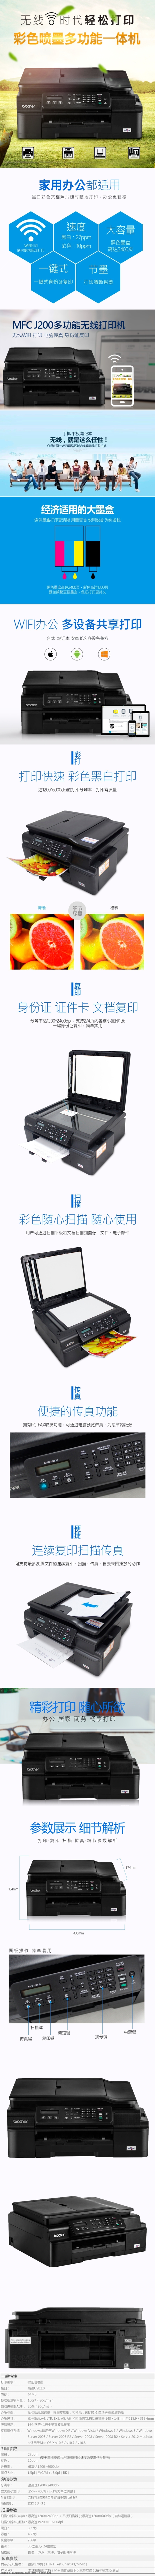 打印机 设备 详情 墨盒 机器 数码墨盒 阳光 蓝色 无线 打印 详情页 淘宝界面设计 淘宝装修模板